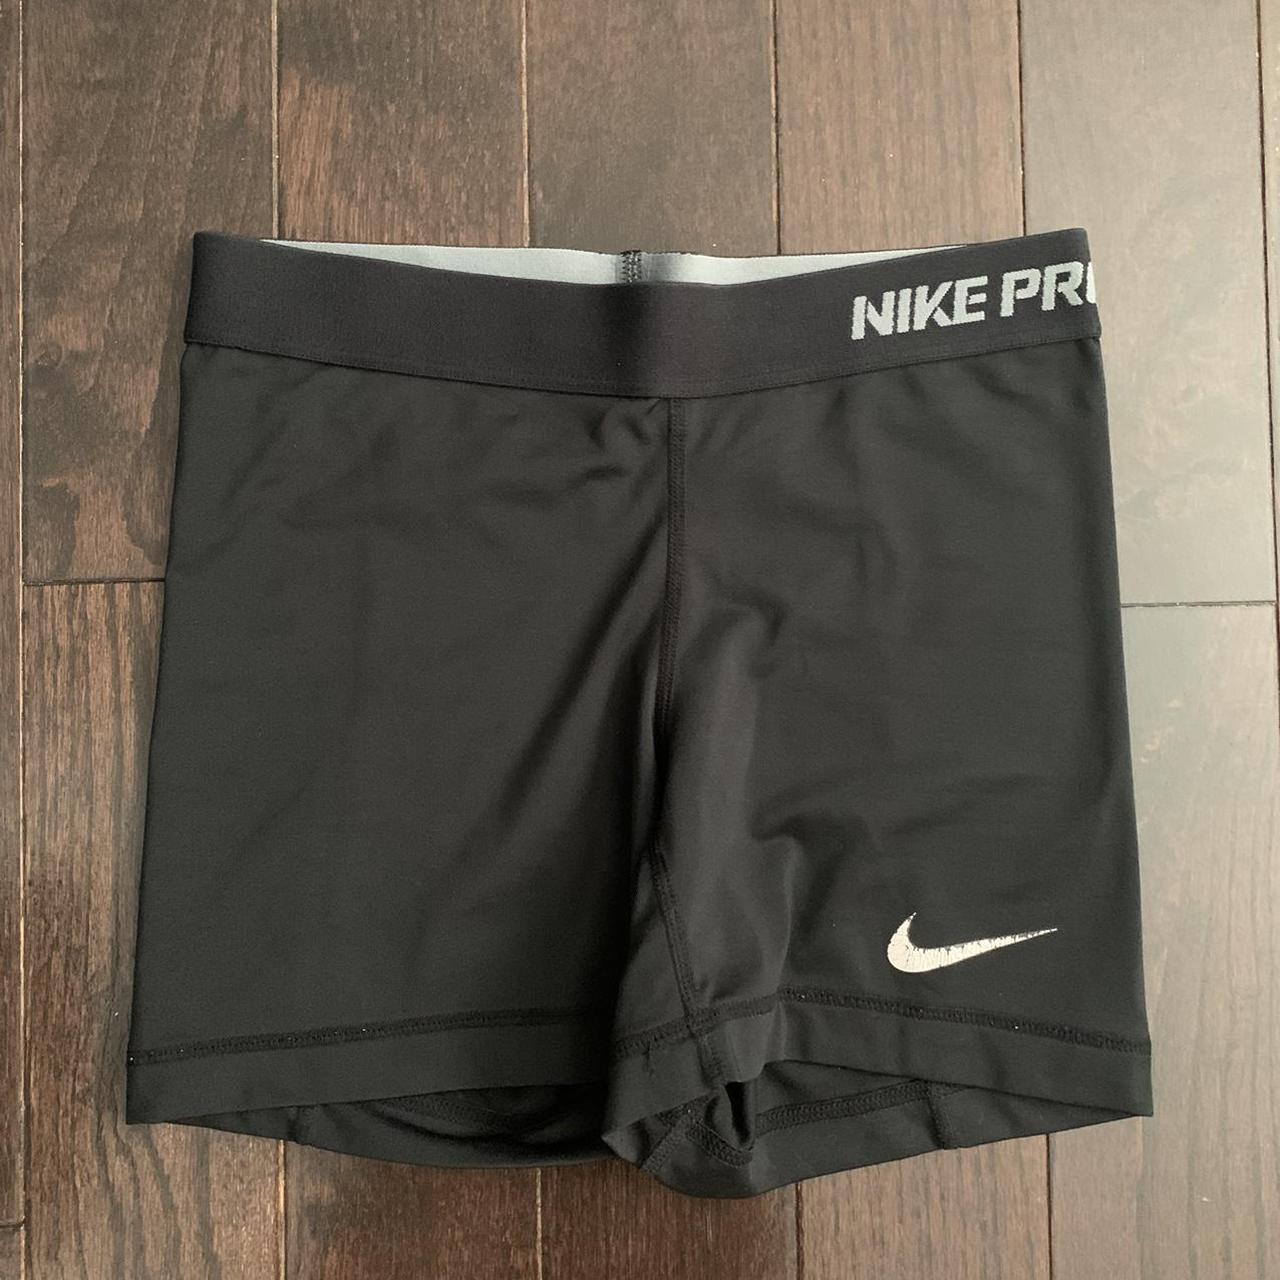 Product Image 1 - Nike Pro Shorts

• Good condition,